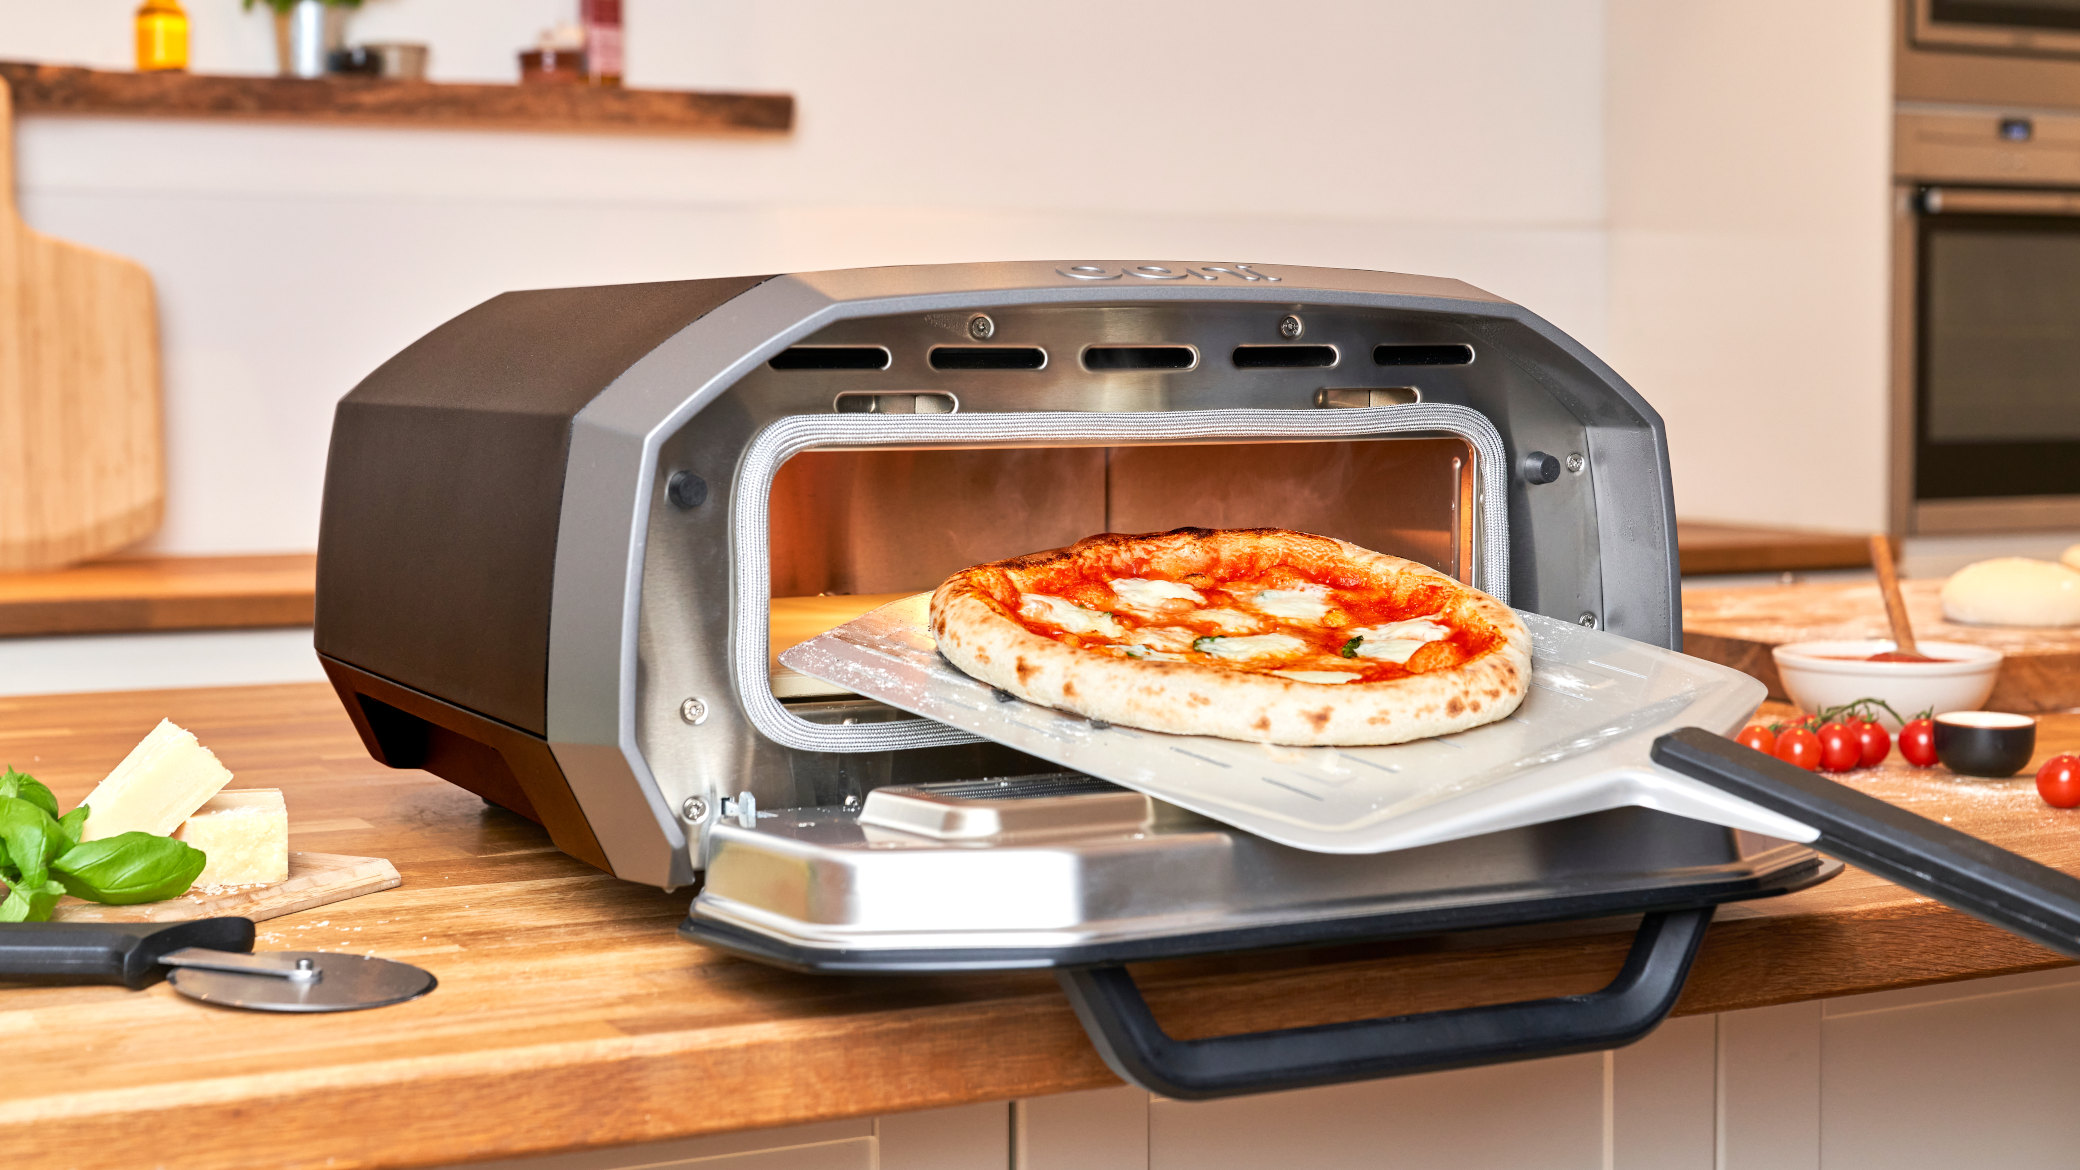 Ha senso comprare un forno elettrico per la pizza? - Il Post